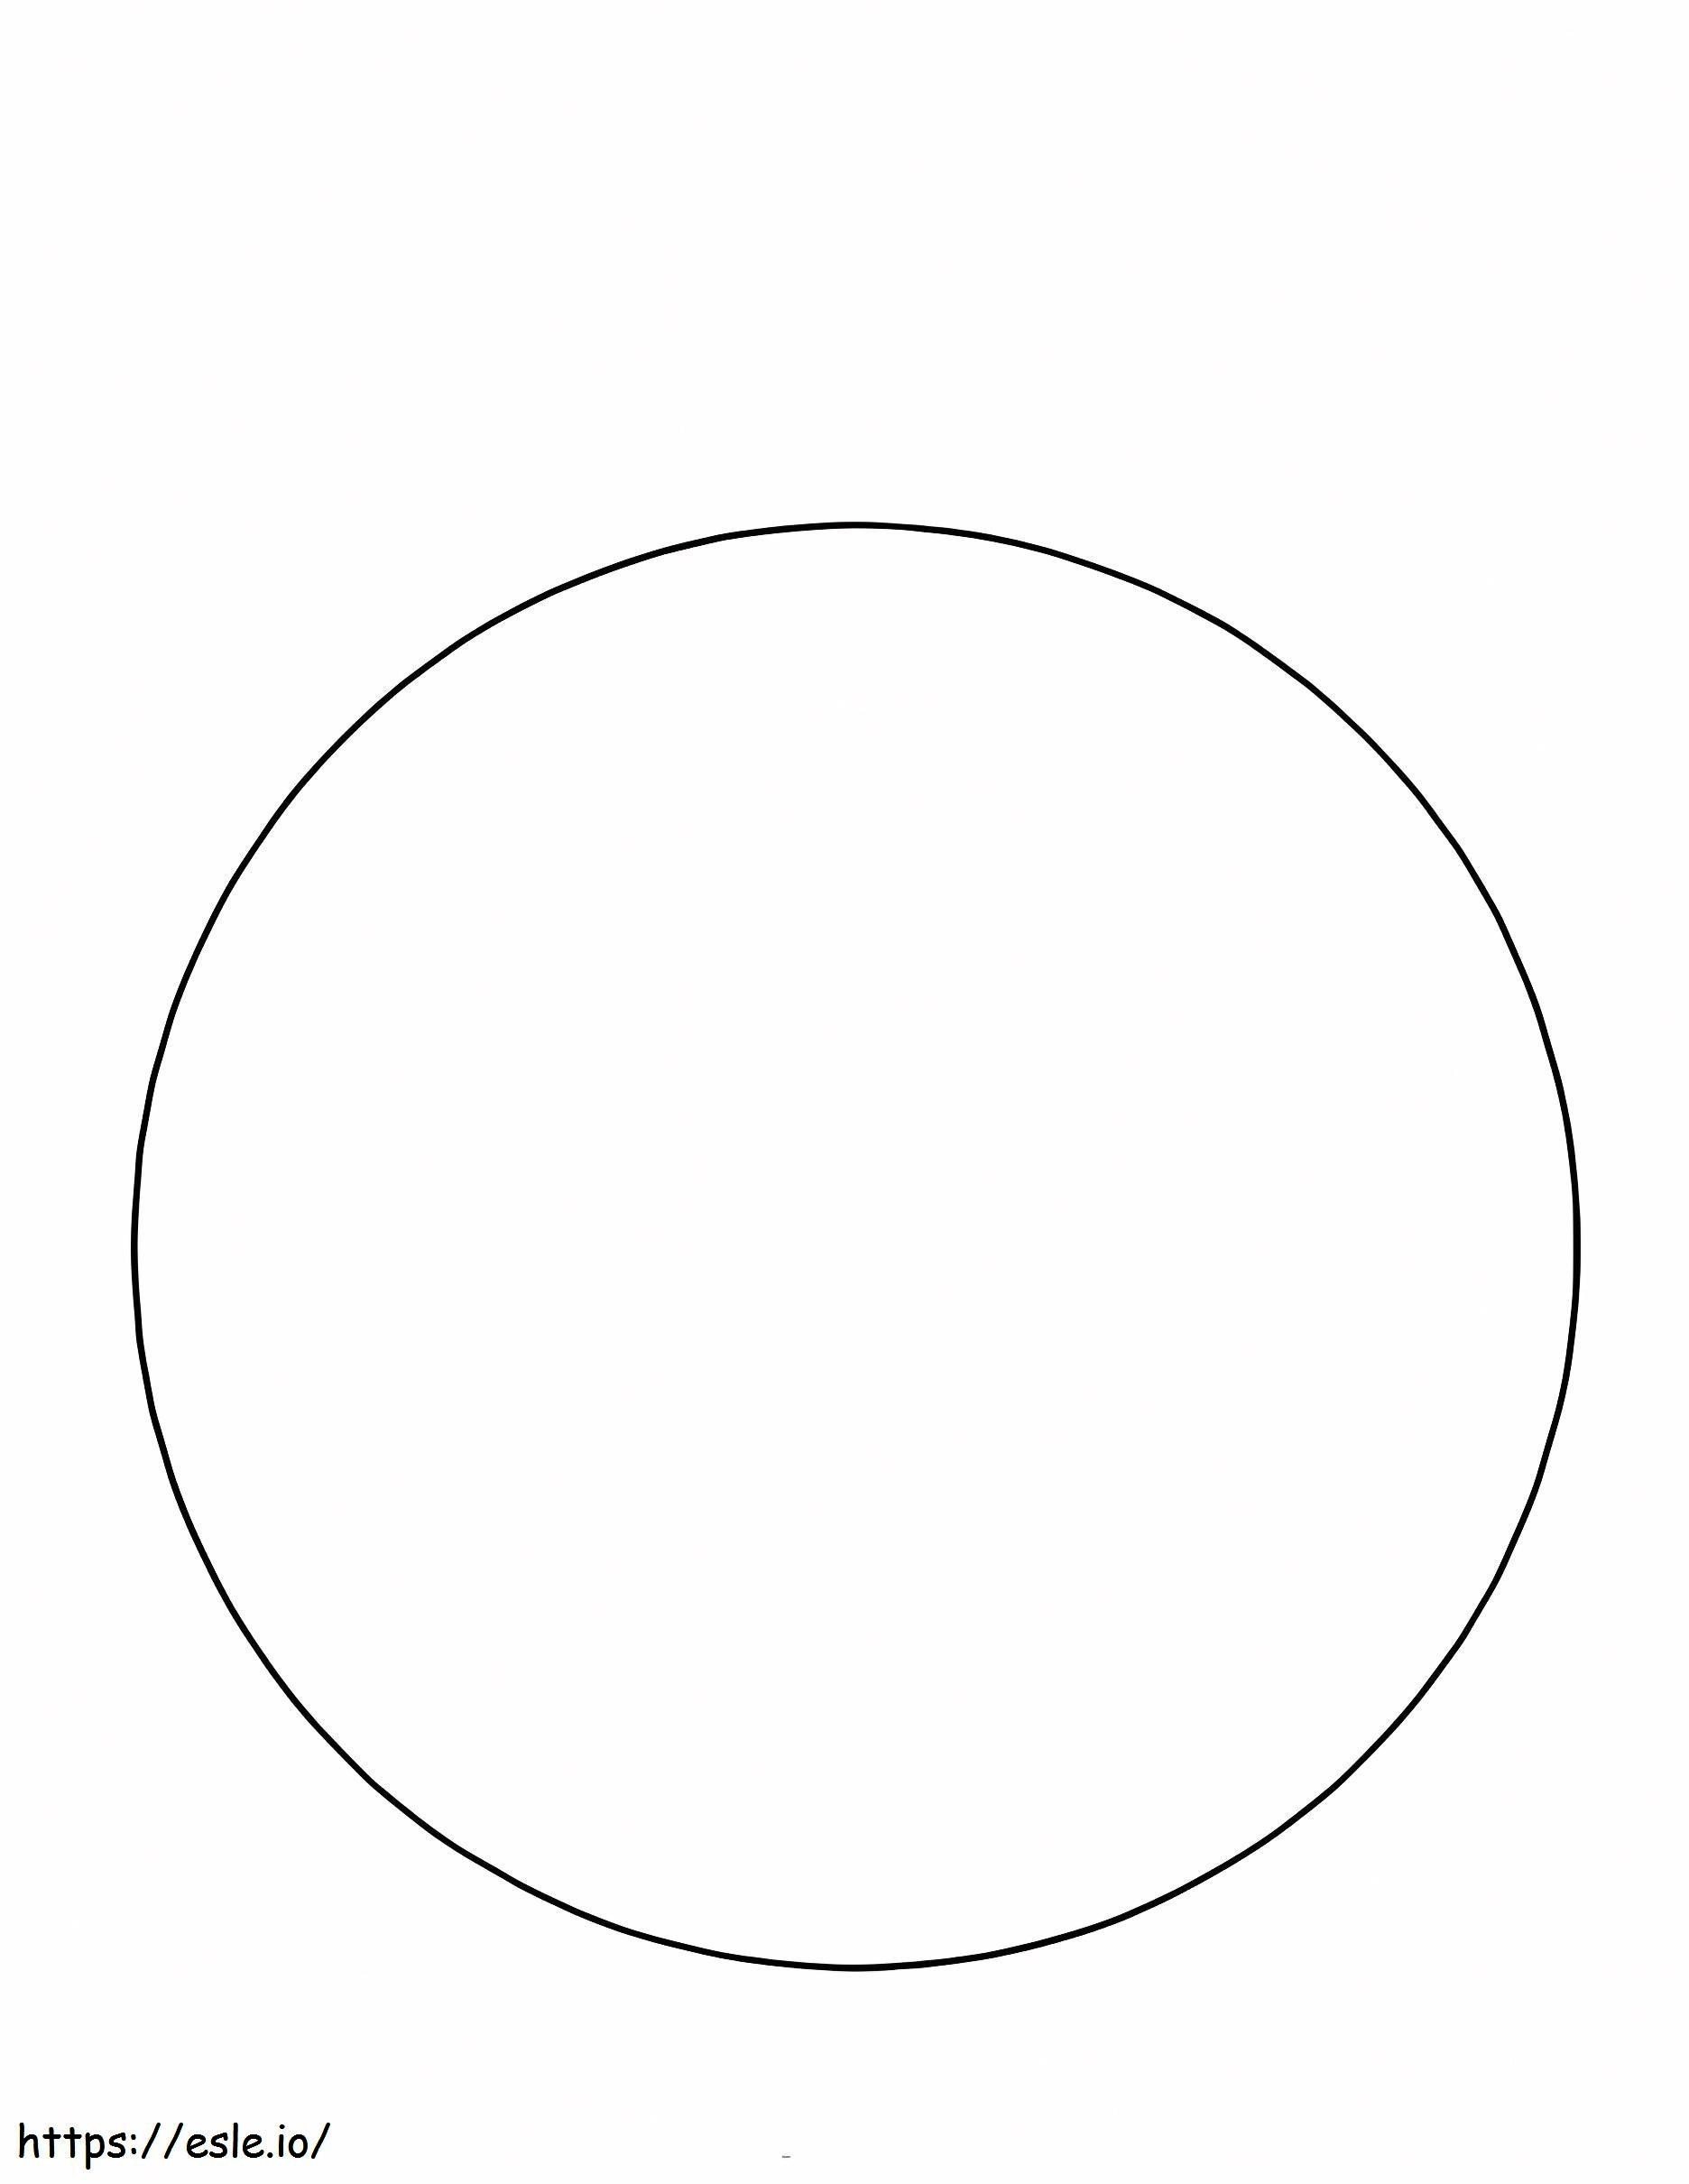 Cerchio semplice da colorare